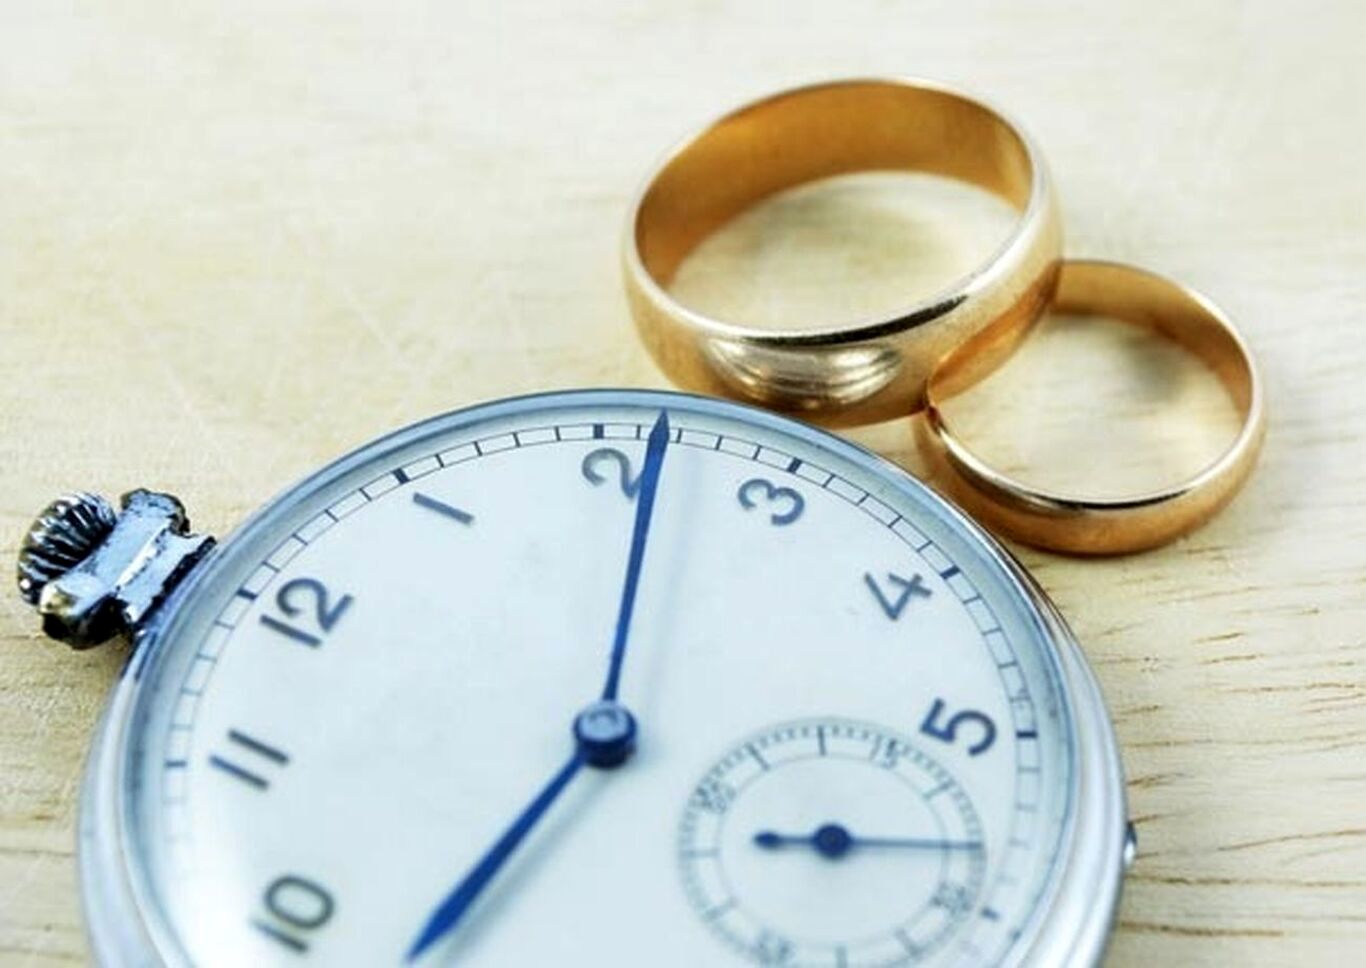 انصراف از نامزدی و وعده ازدواج جرم است؟